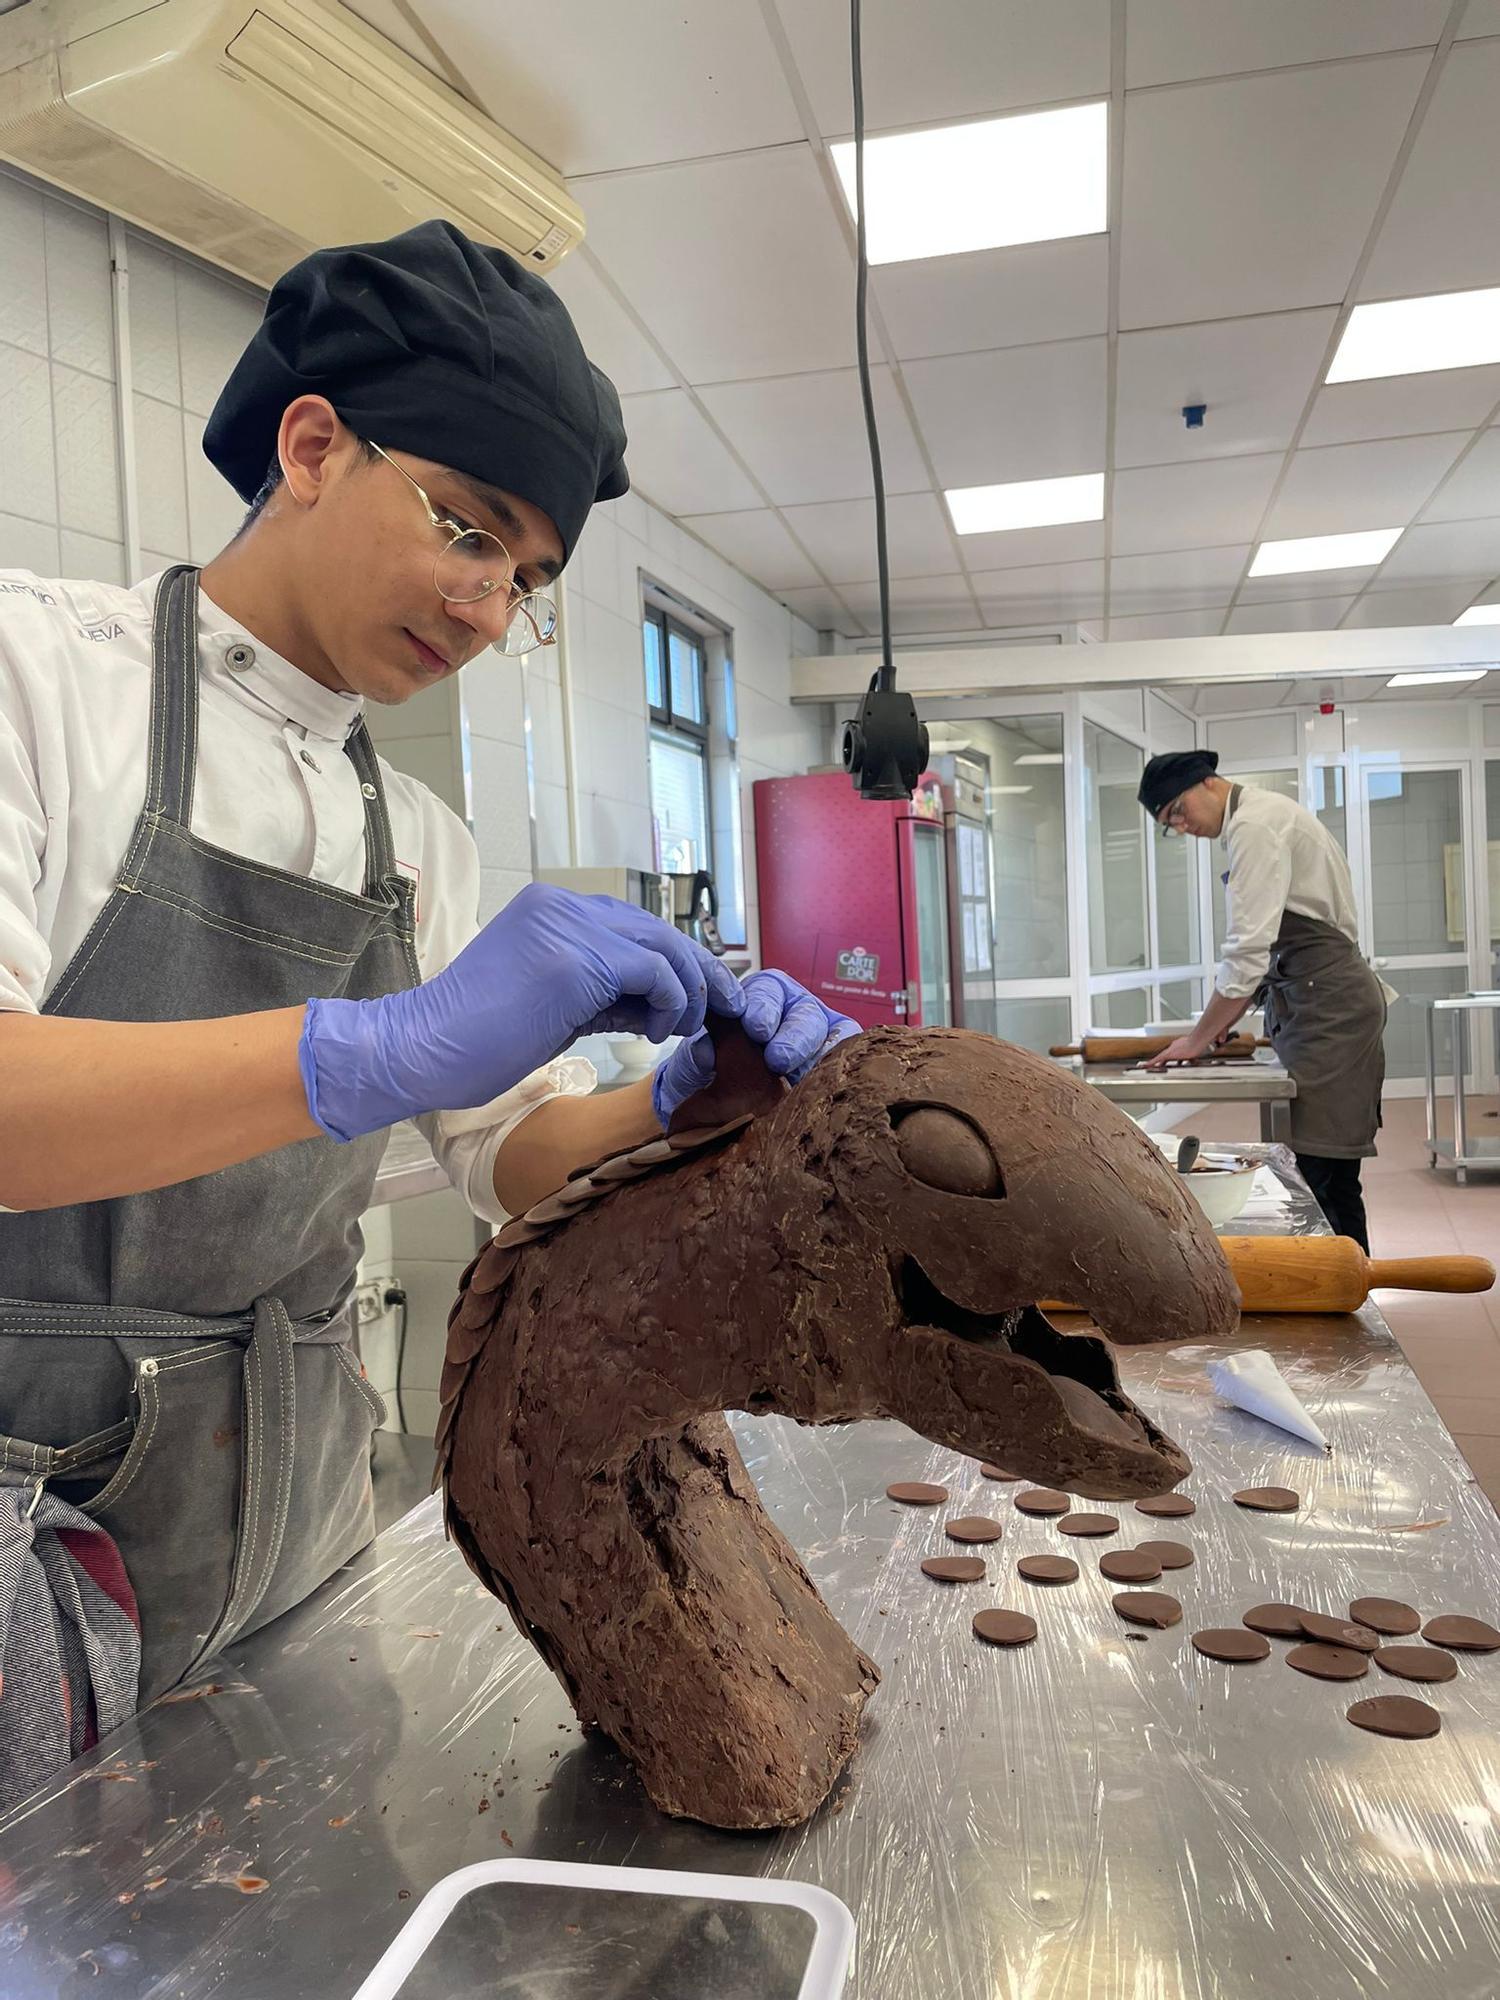 L’alumnat de Pastisseria de Joviat
omple Manresa de màgia i creativitat
amb figures de xocolata de gran format